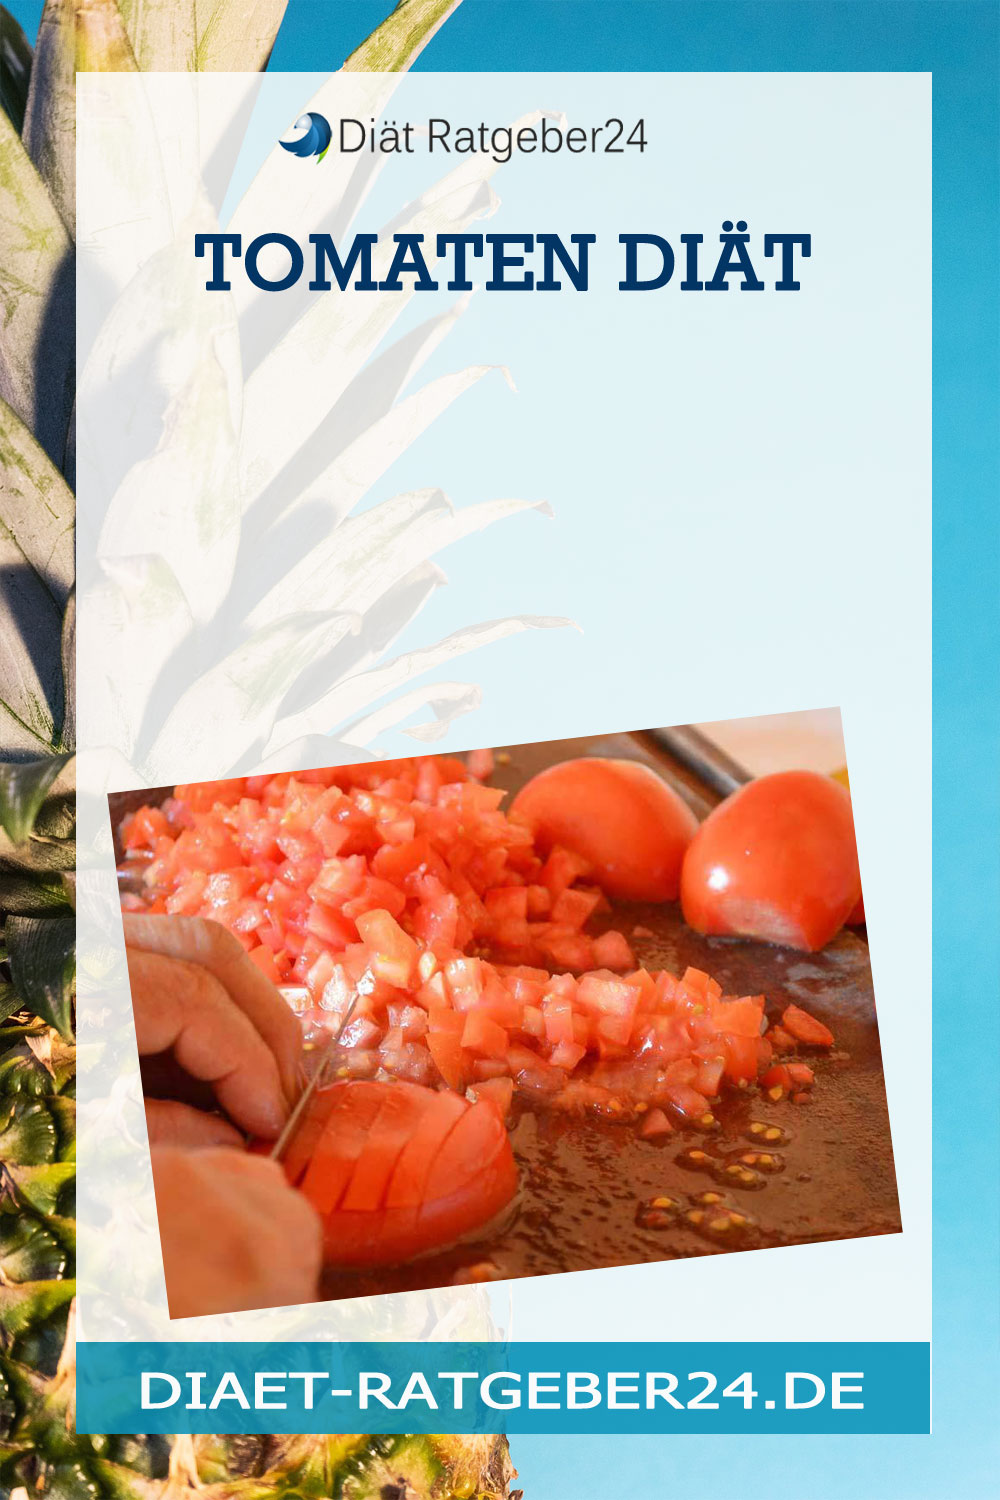 Die Tomaten Diät – Alles was man wissen muss